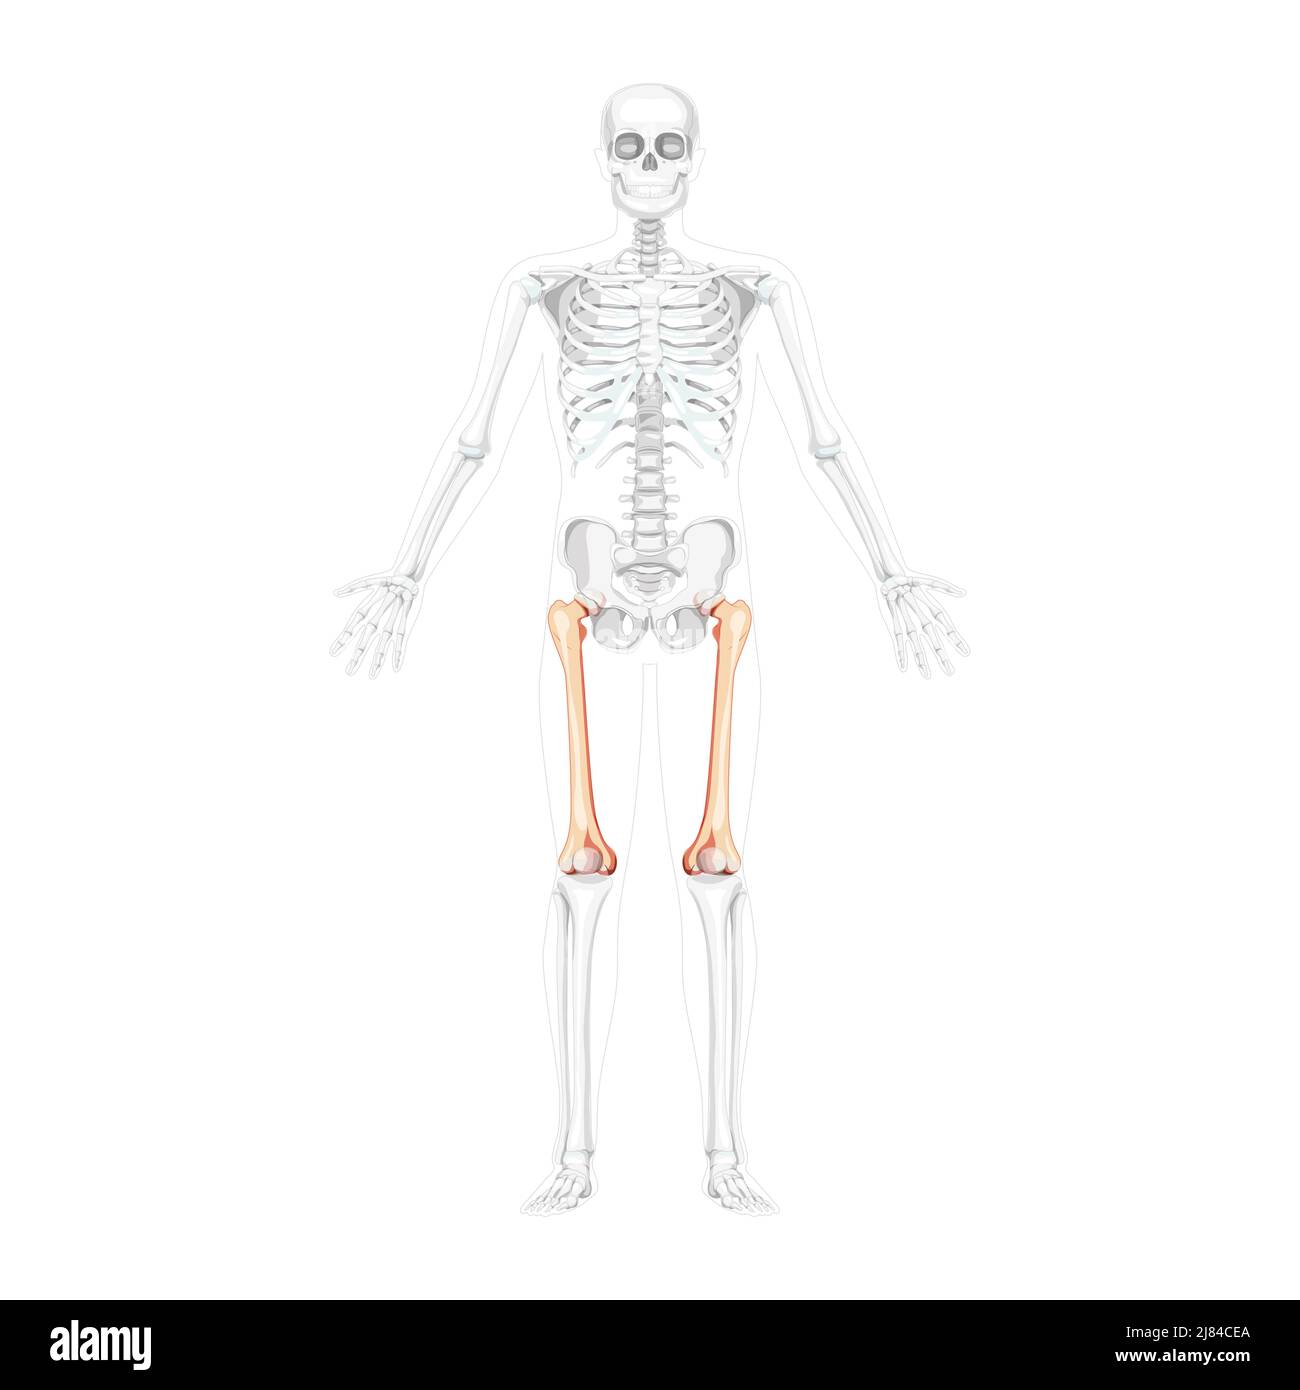 Scheletro femore coscia osso Vista frontale umana con due pose del braccio con posizione delle ossa parzialmente trasparente. Concetto di colore naturale piatto realistico illustrazione vettoriale dell'anatomia isolata su sfondo bianco Illustrazione Vettoriale